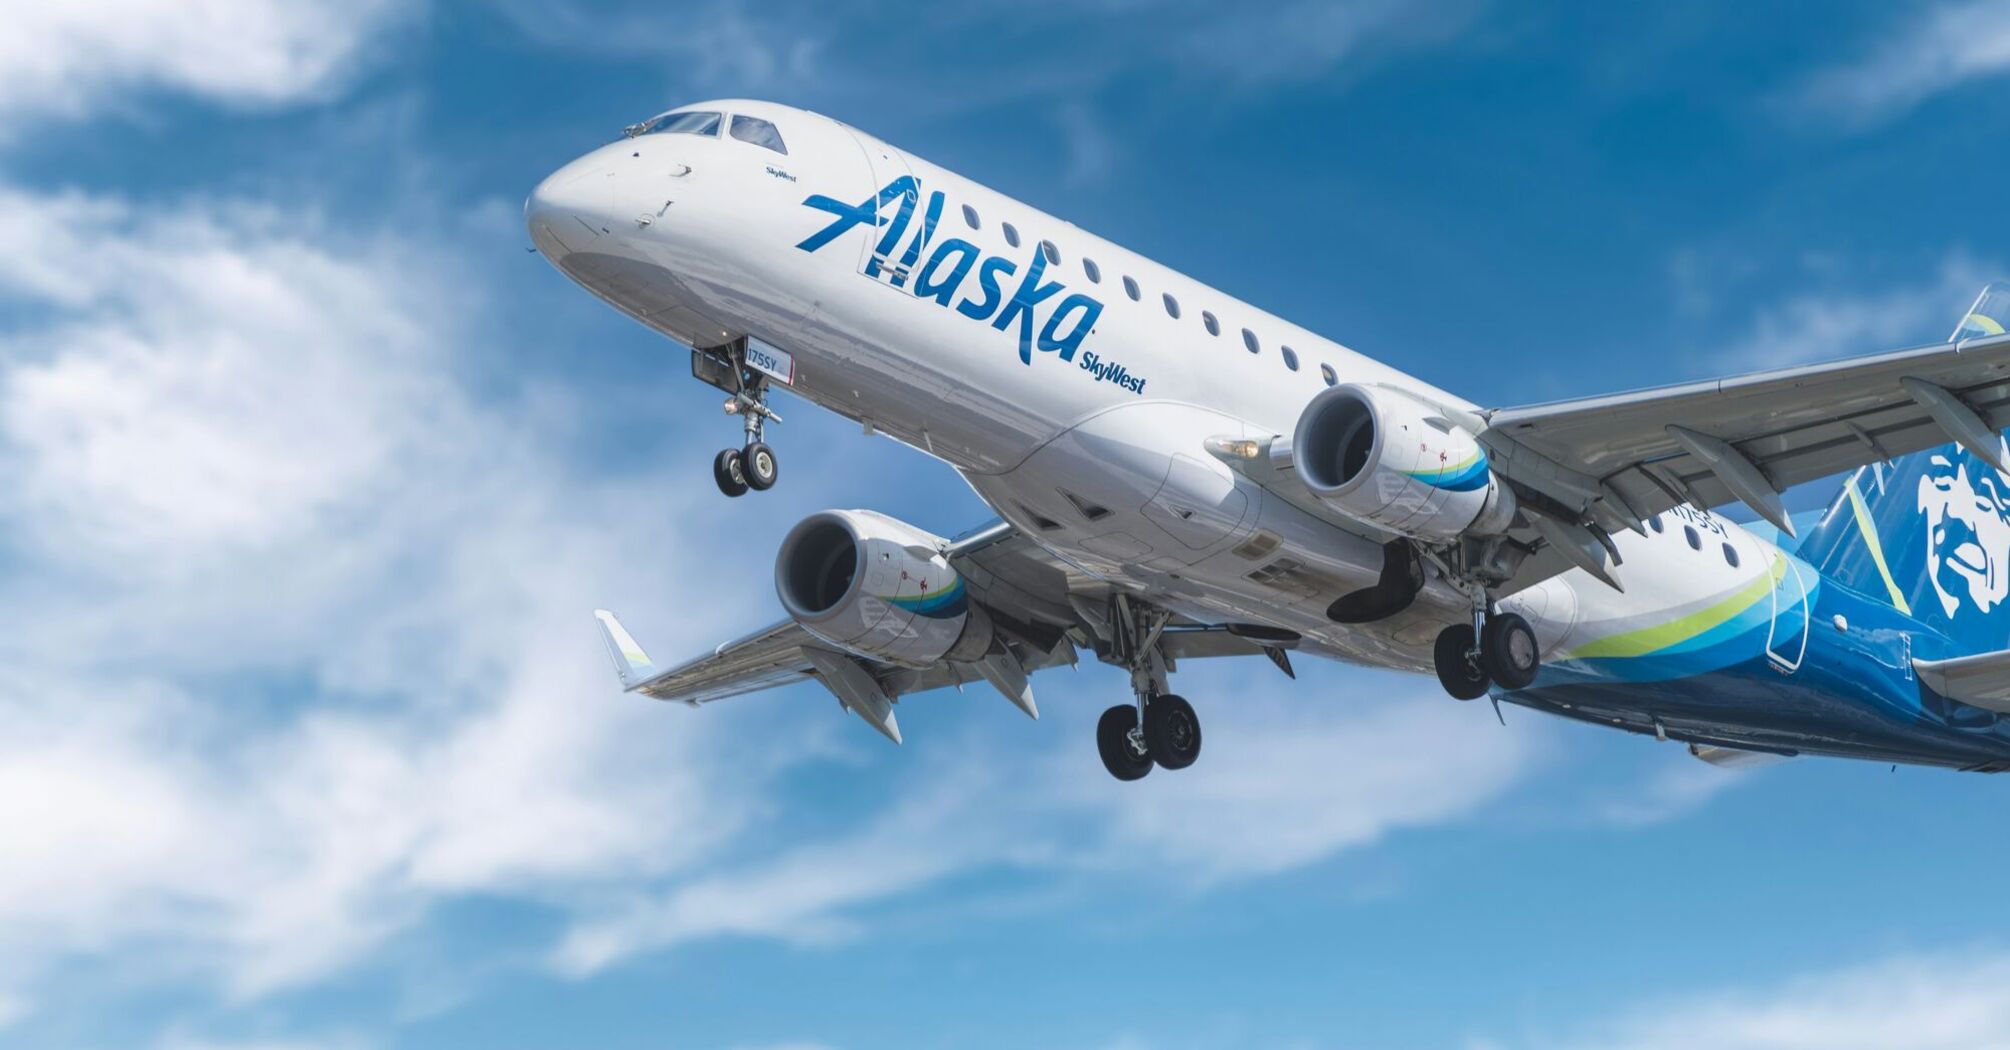 Alaska Airlines Embraer